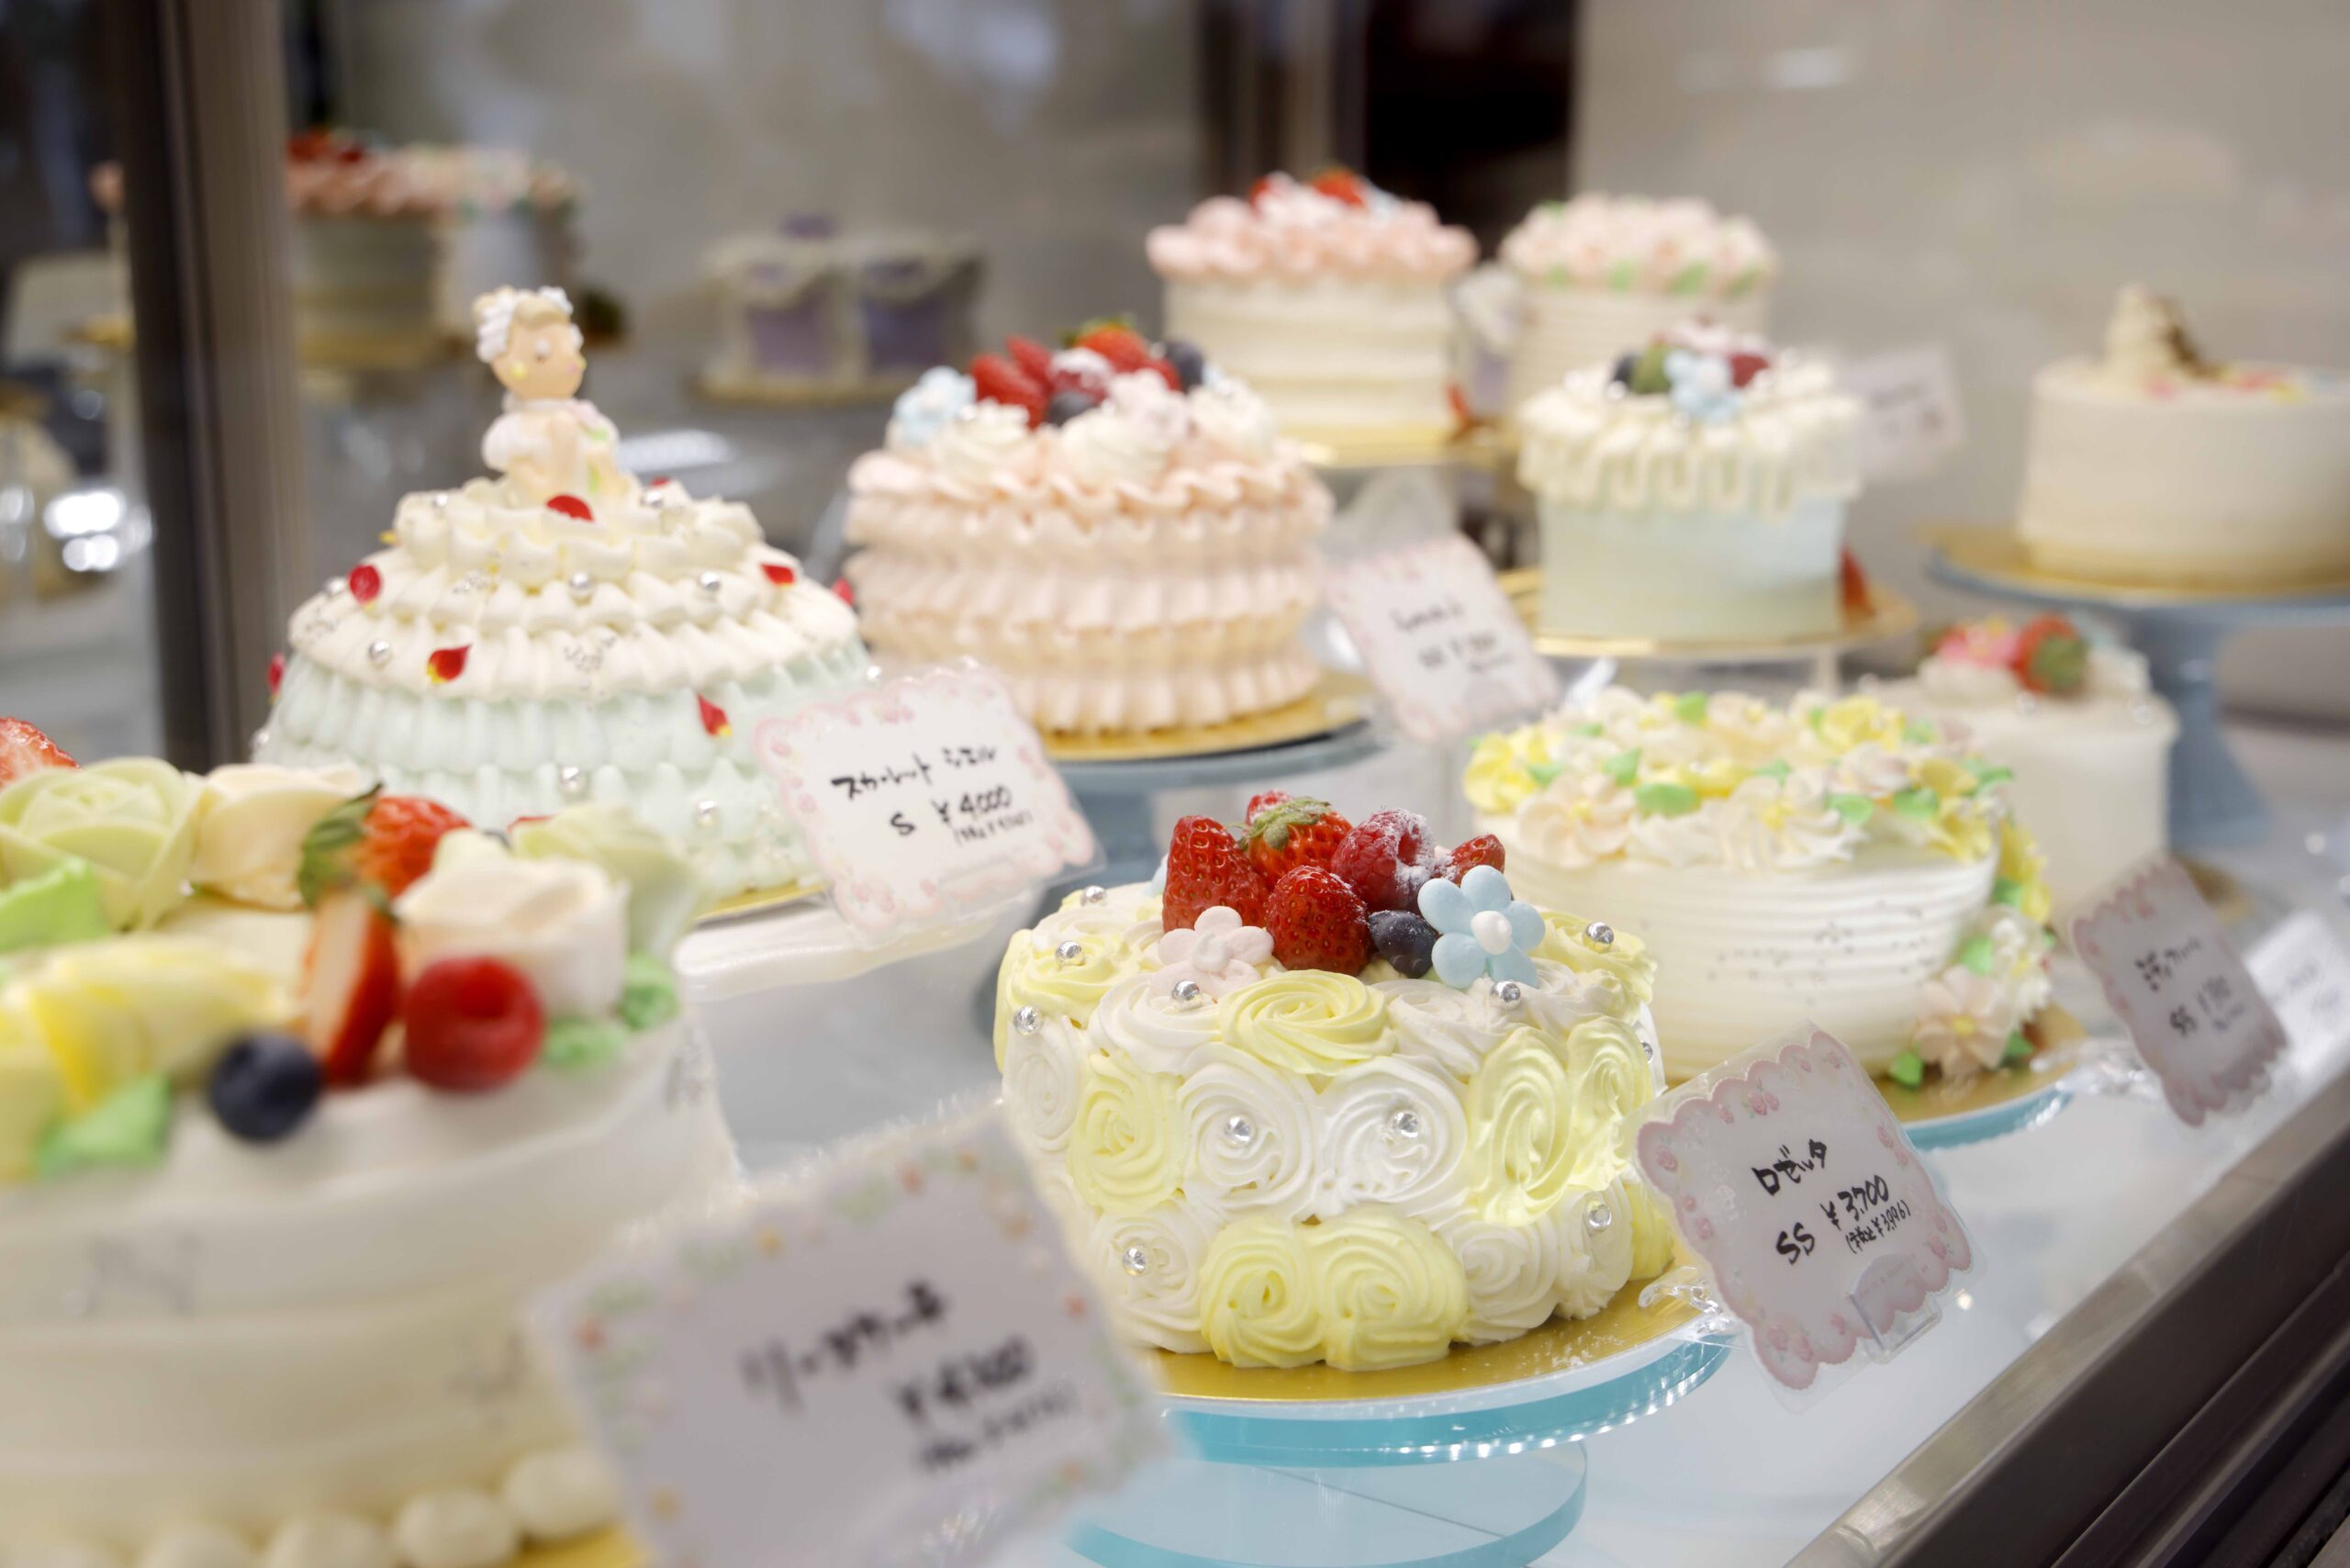 ドーム型のプリンセスのケーキやハート型、1〜2名様用のプティサイズなどいろんなケーキが並びます。柔らかなパステル調のカラーの生クリームはお花やフリル、レースなど変幻自在に操る職人の技が光ります。